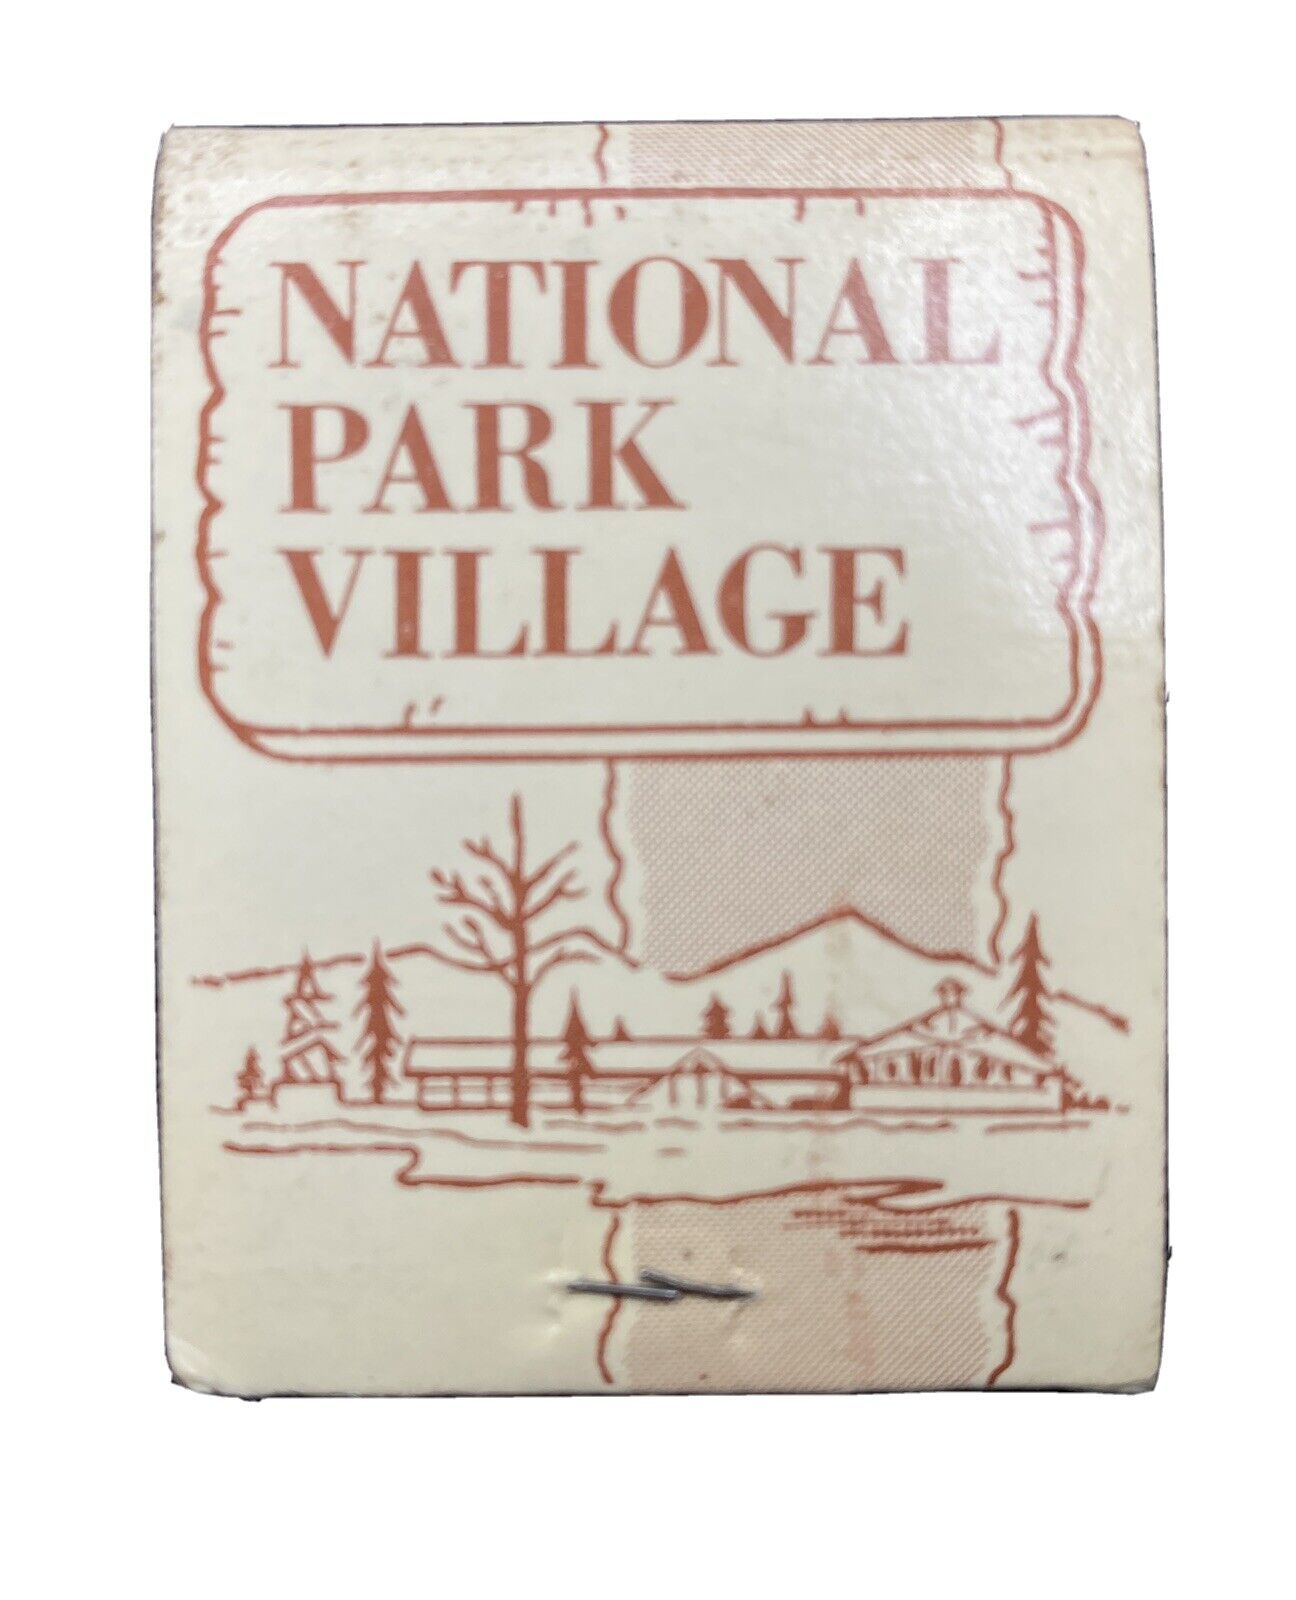 NATIONAL PARK VILLAGE  Full Unstruck Vintage Matchbook Advertising 